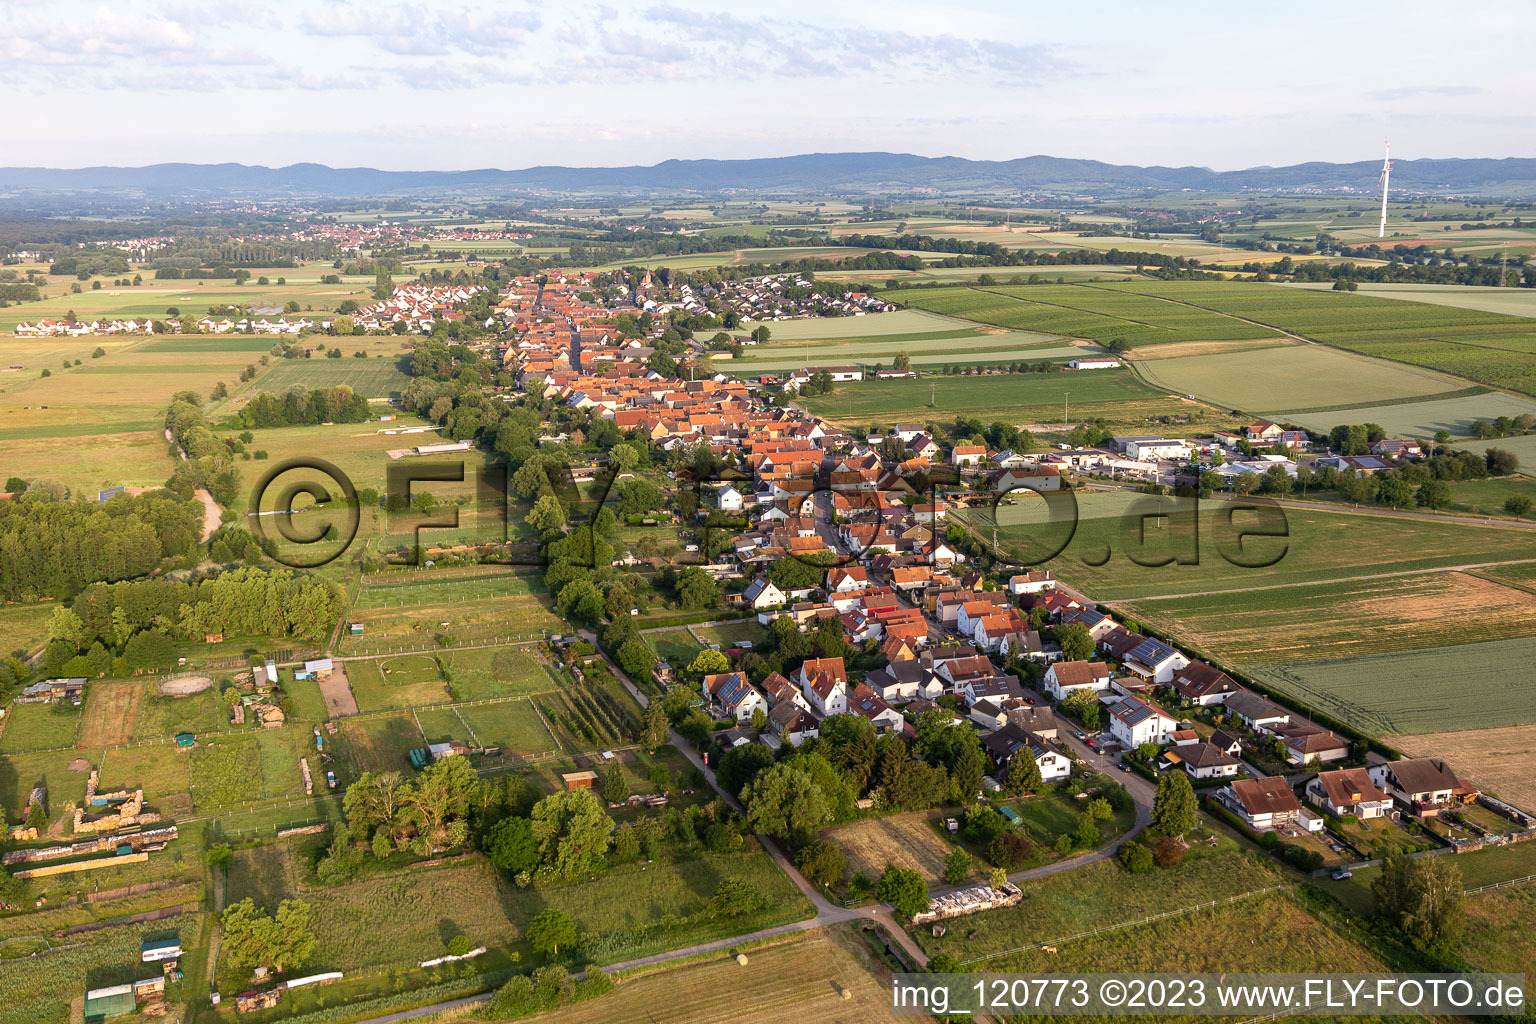 Vue aérienne de Champs agricoles et surfaces utilisables à Freckenfeld dans le département Rhénanie-Palatinat, Allemagne